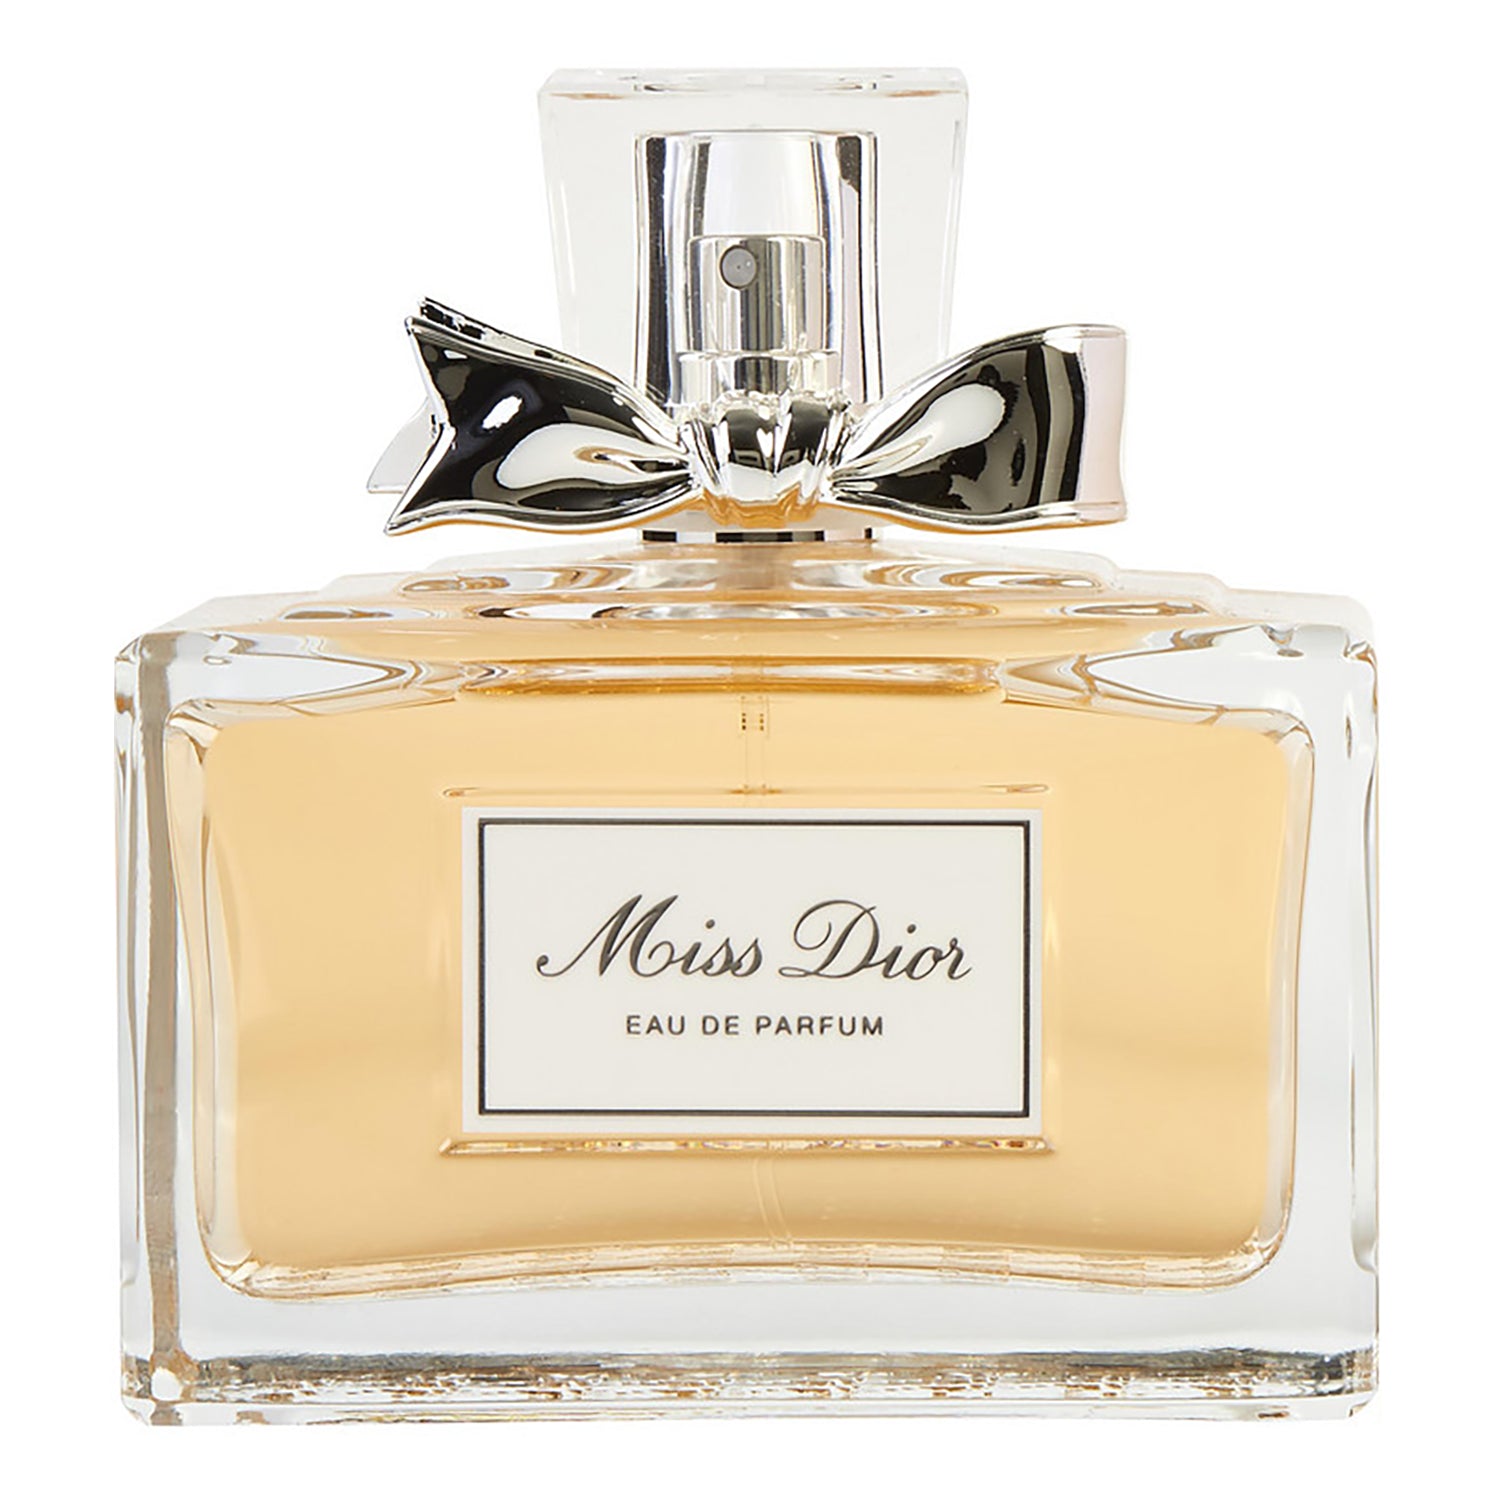 Miss Dior (Miss Dior Cherie) by Christian Dior Eau De Parfum Spray